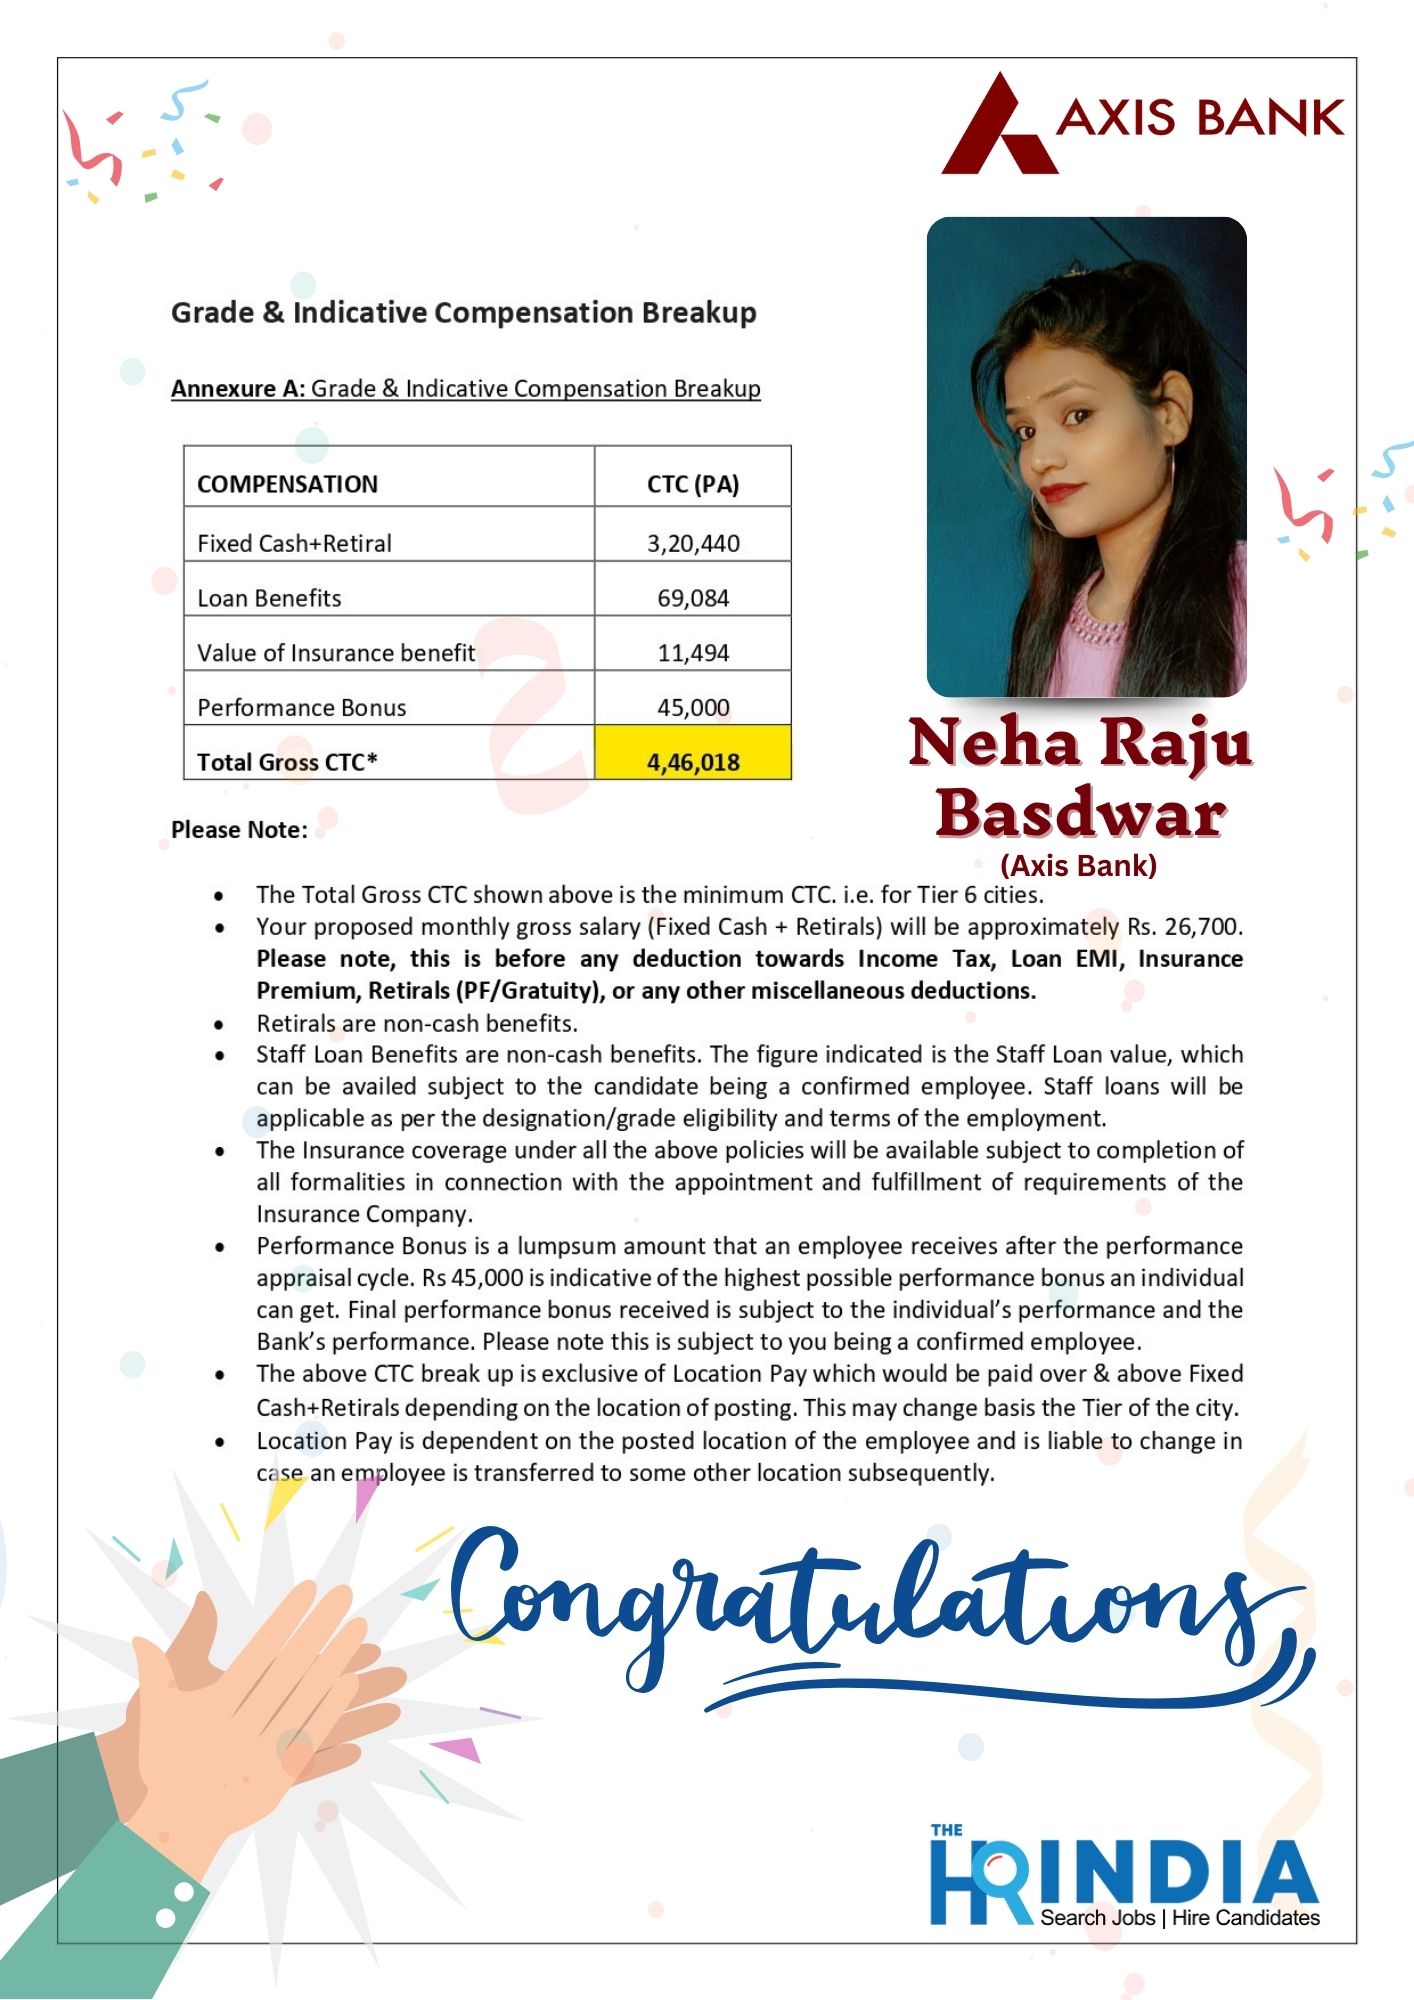 Neha Raju Basdwar  | The HR India